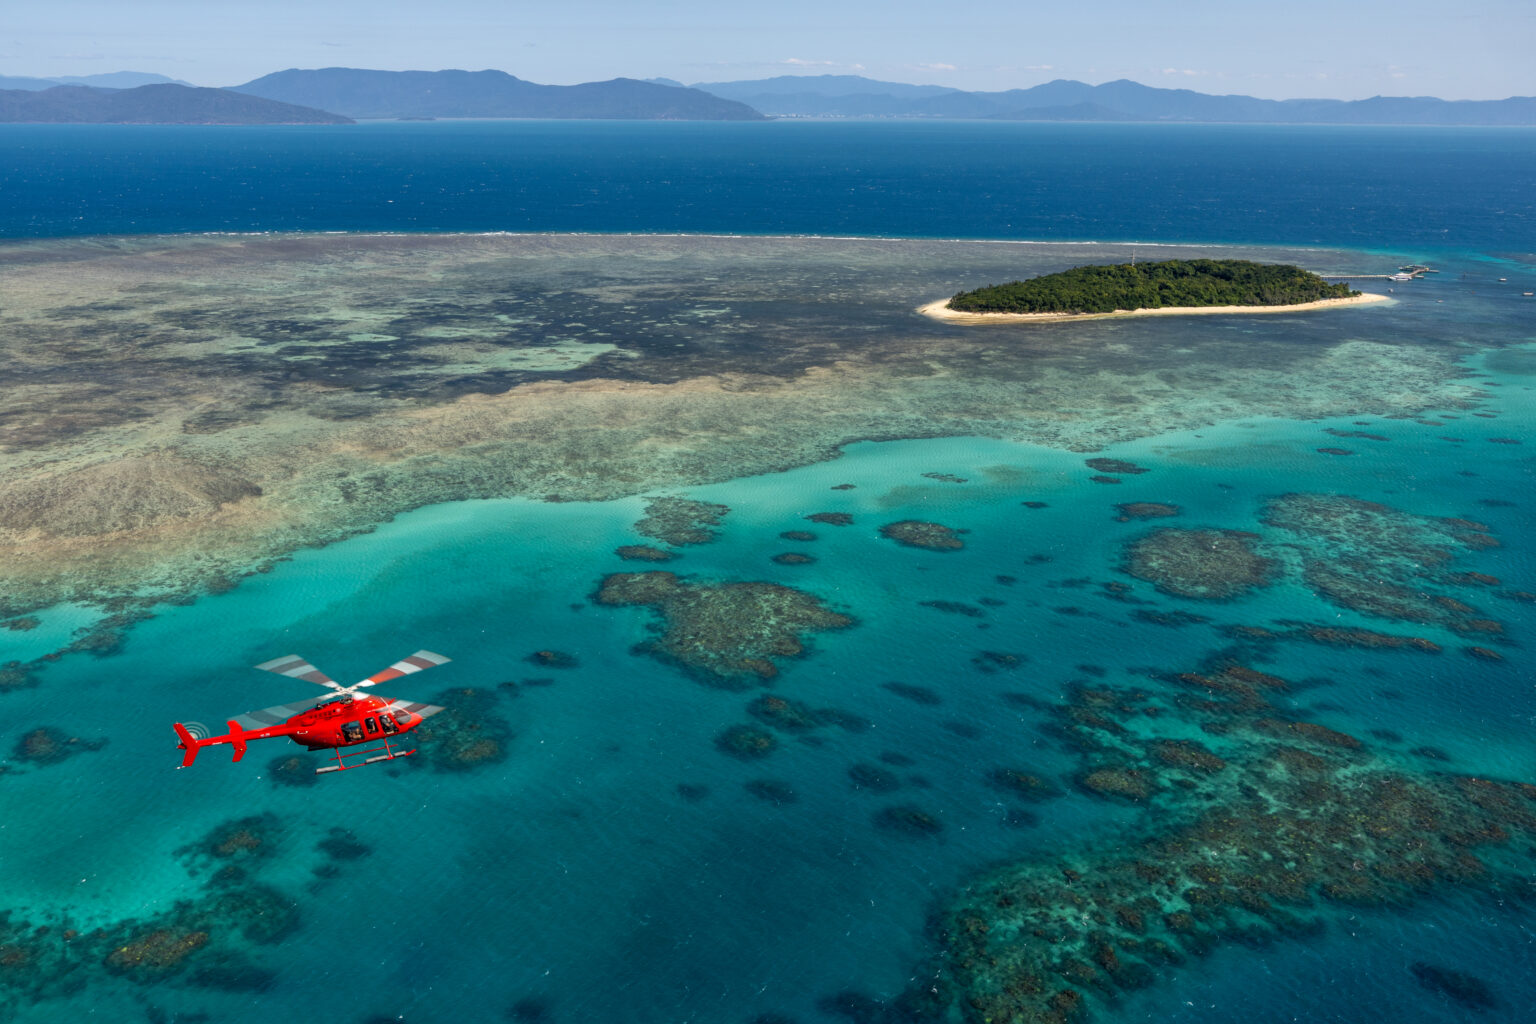 ケアンズから高速双胴船で45分、または眺め最高のヘリコプターで20分で行くグリーン島は、アクセスしやすい楽園の島です。
多様な海洋生物が生息する珊瑚礁に囲まれたグリーン島は、グレートバリアリーフで独自の植物形態を持つ唯一の珊瑚礁の島です。 ビーチでのんびりしたり、泳いだり、ダイビング、シュノーケリング、グラスボトムボートに乗ったり、その他にも選択に迷う程、様々なオプションを満喫できます。